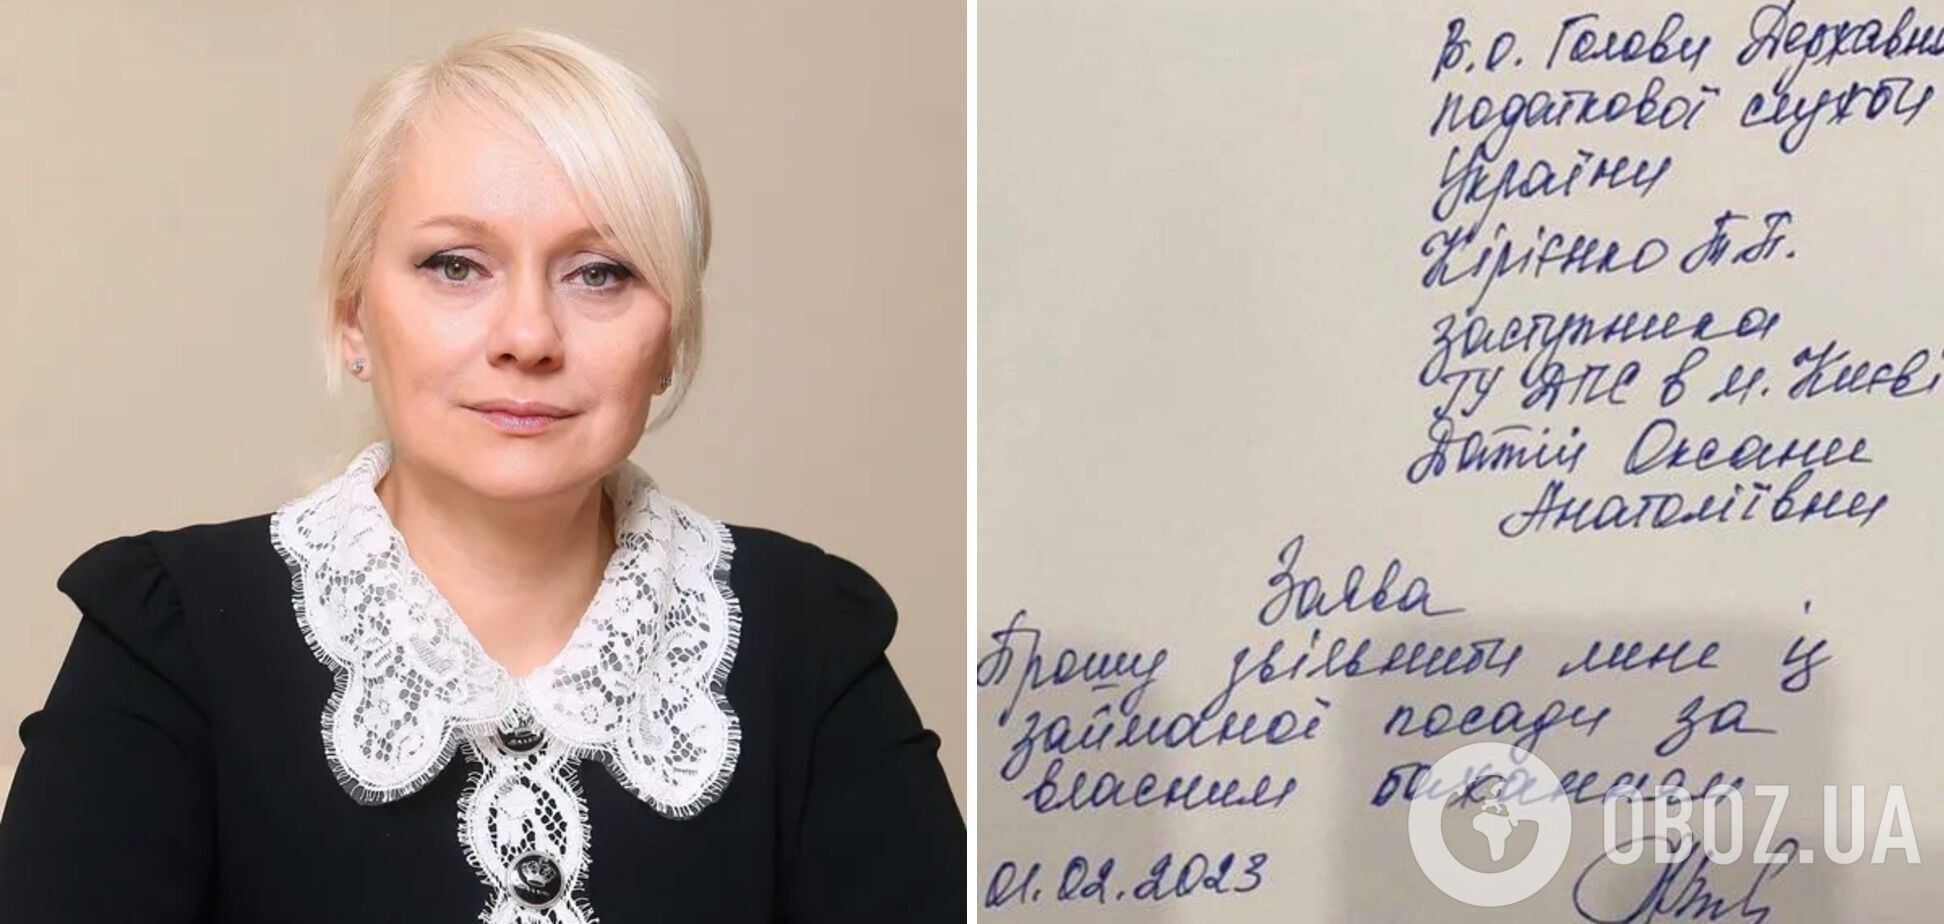 Оксана Датий написала заявление на увольнение